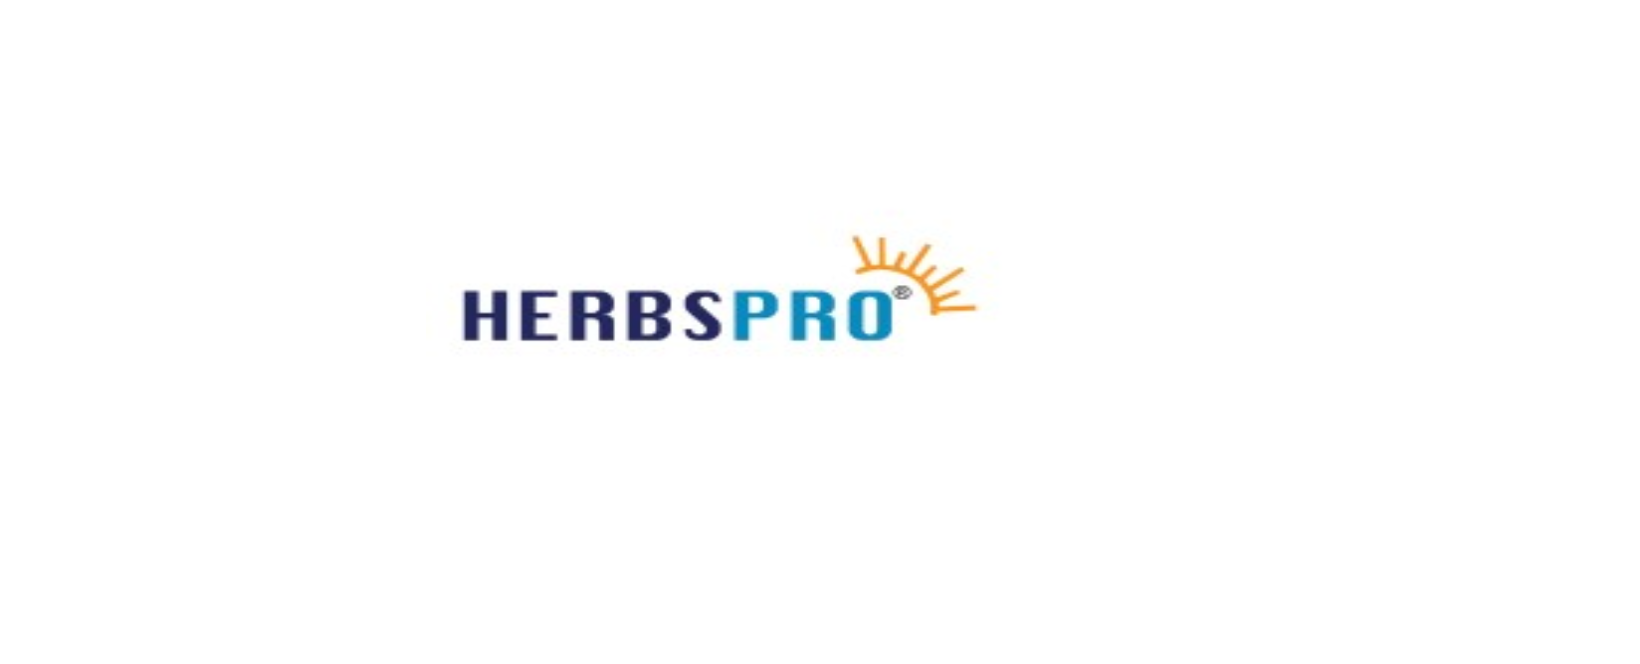 Herbspro Discount Code 2022